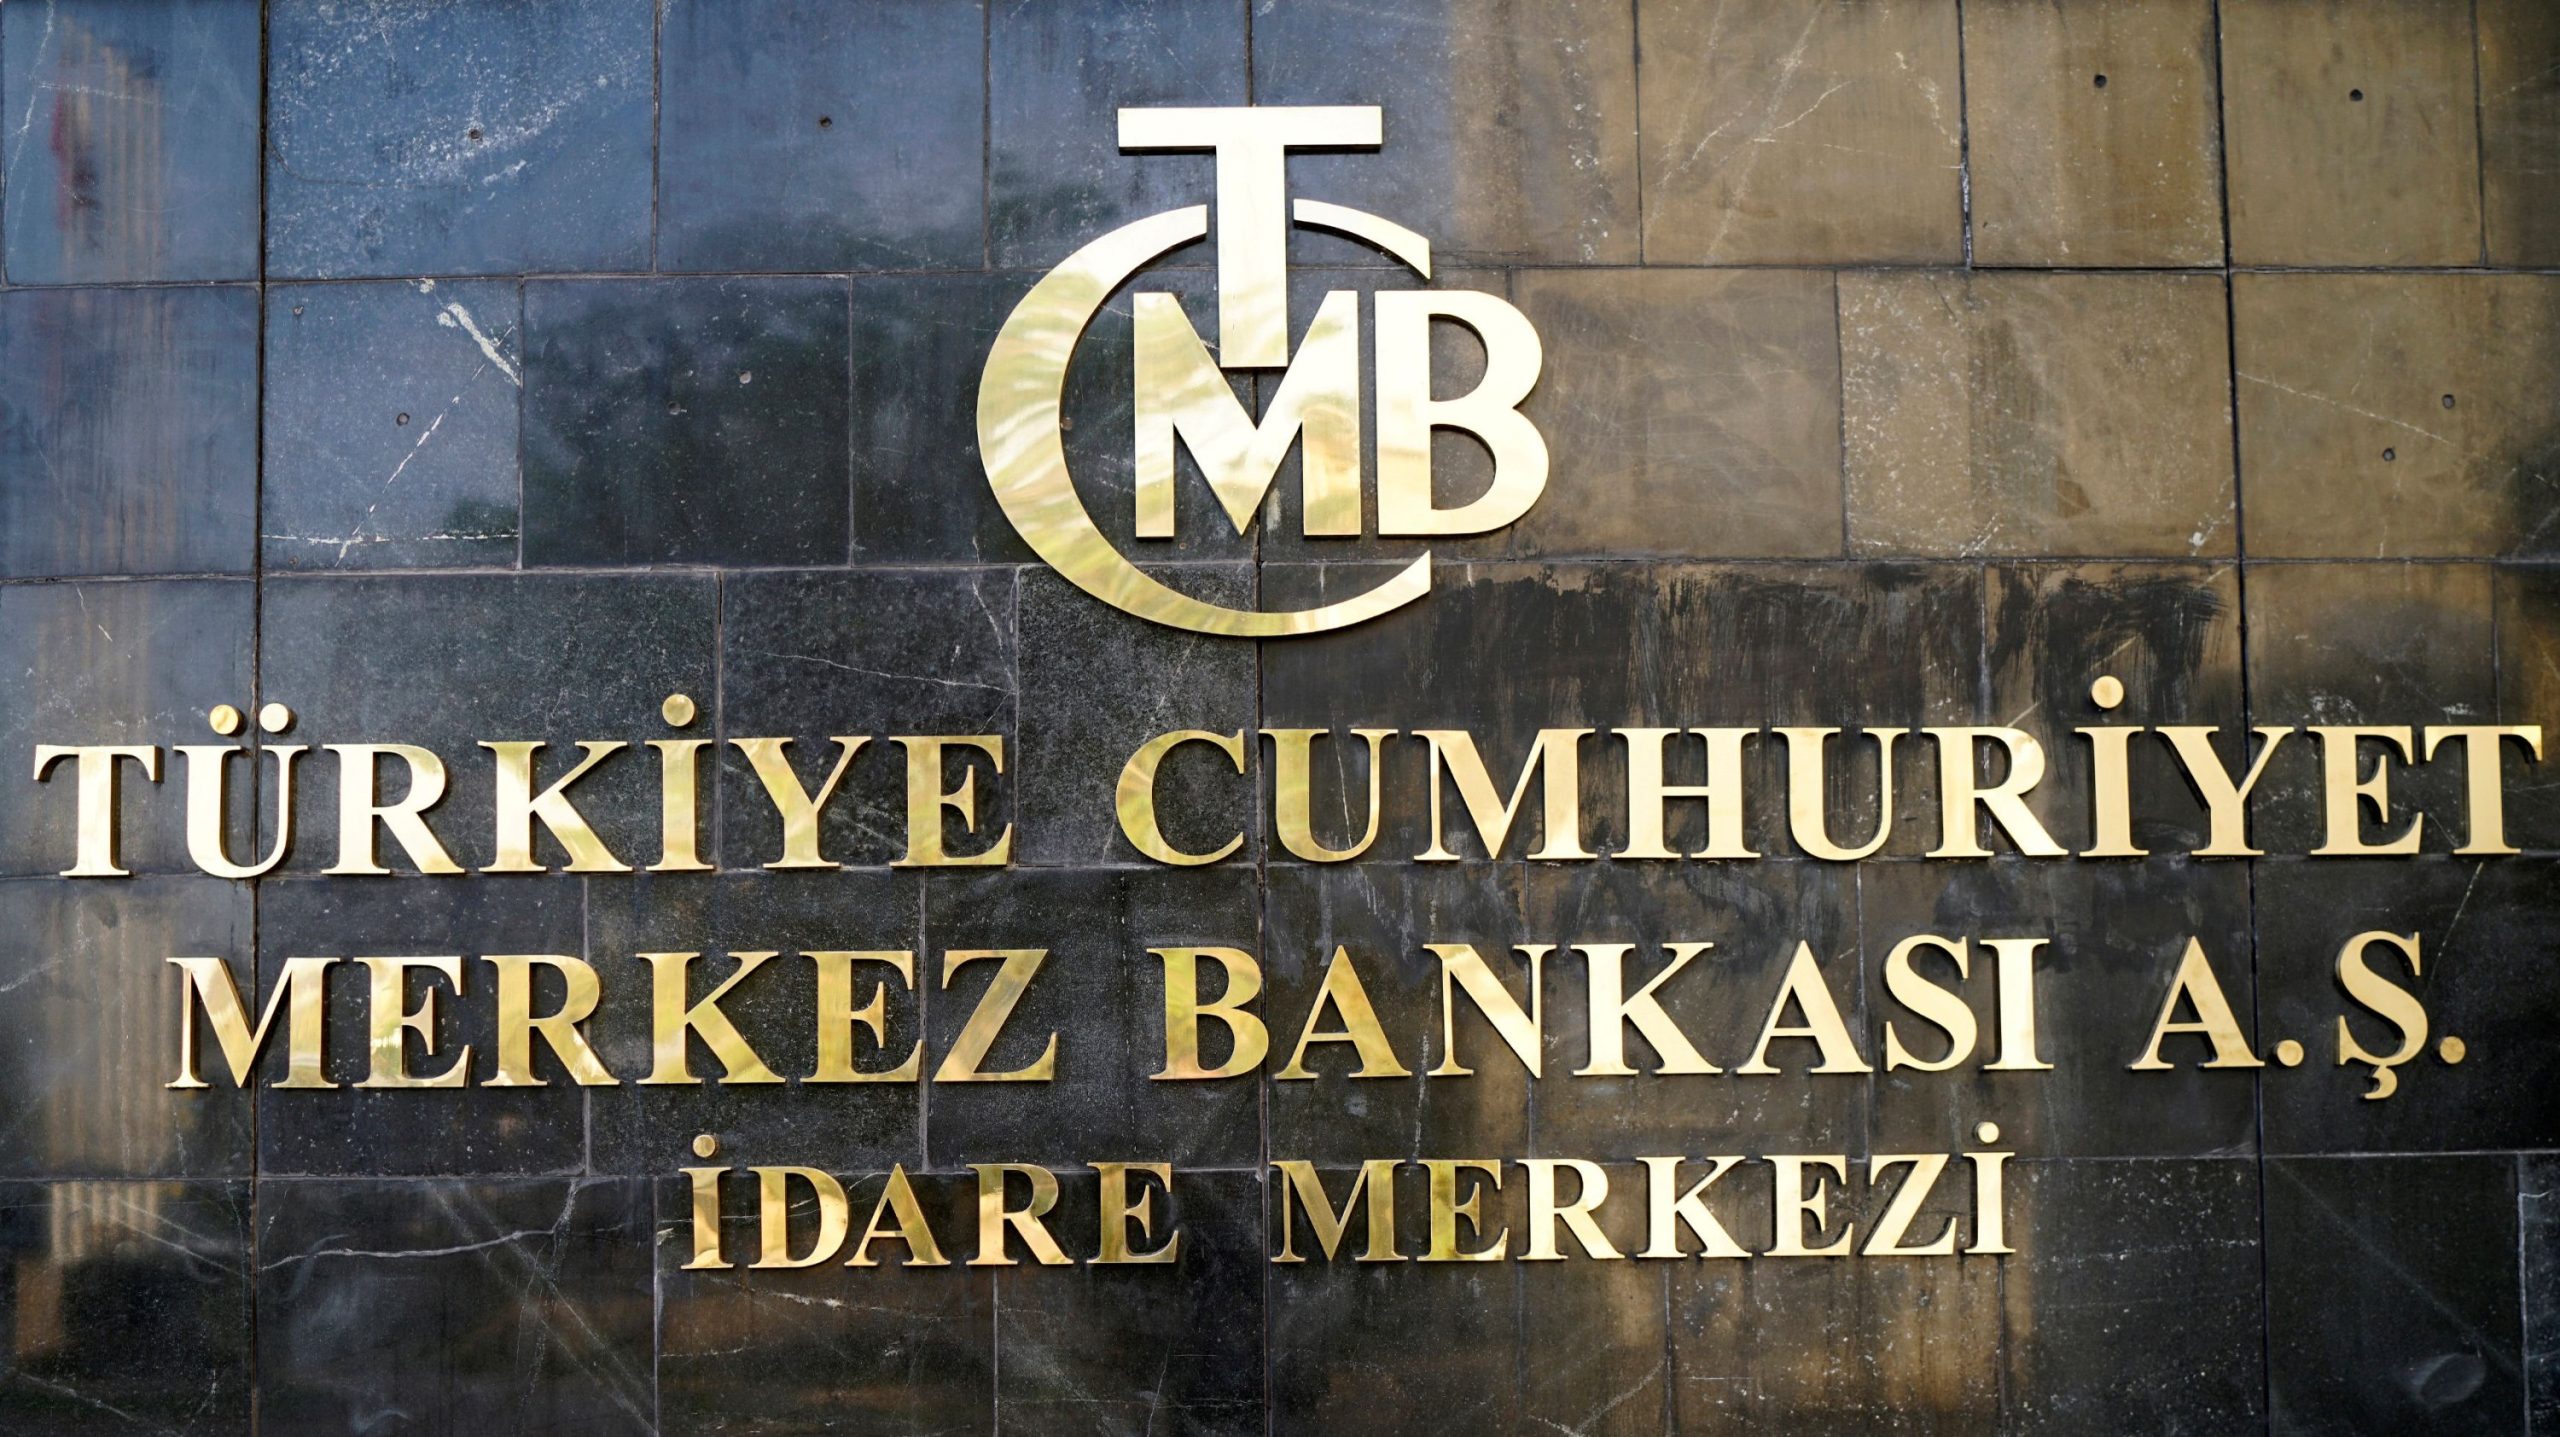 Η κεντρική τράπεζα της Τουρκίας μείωσε το βασικό επιτόκιο της κατά μισή ποσοστιαία μονάδα